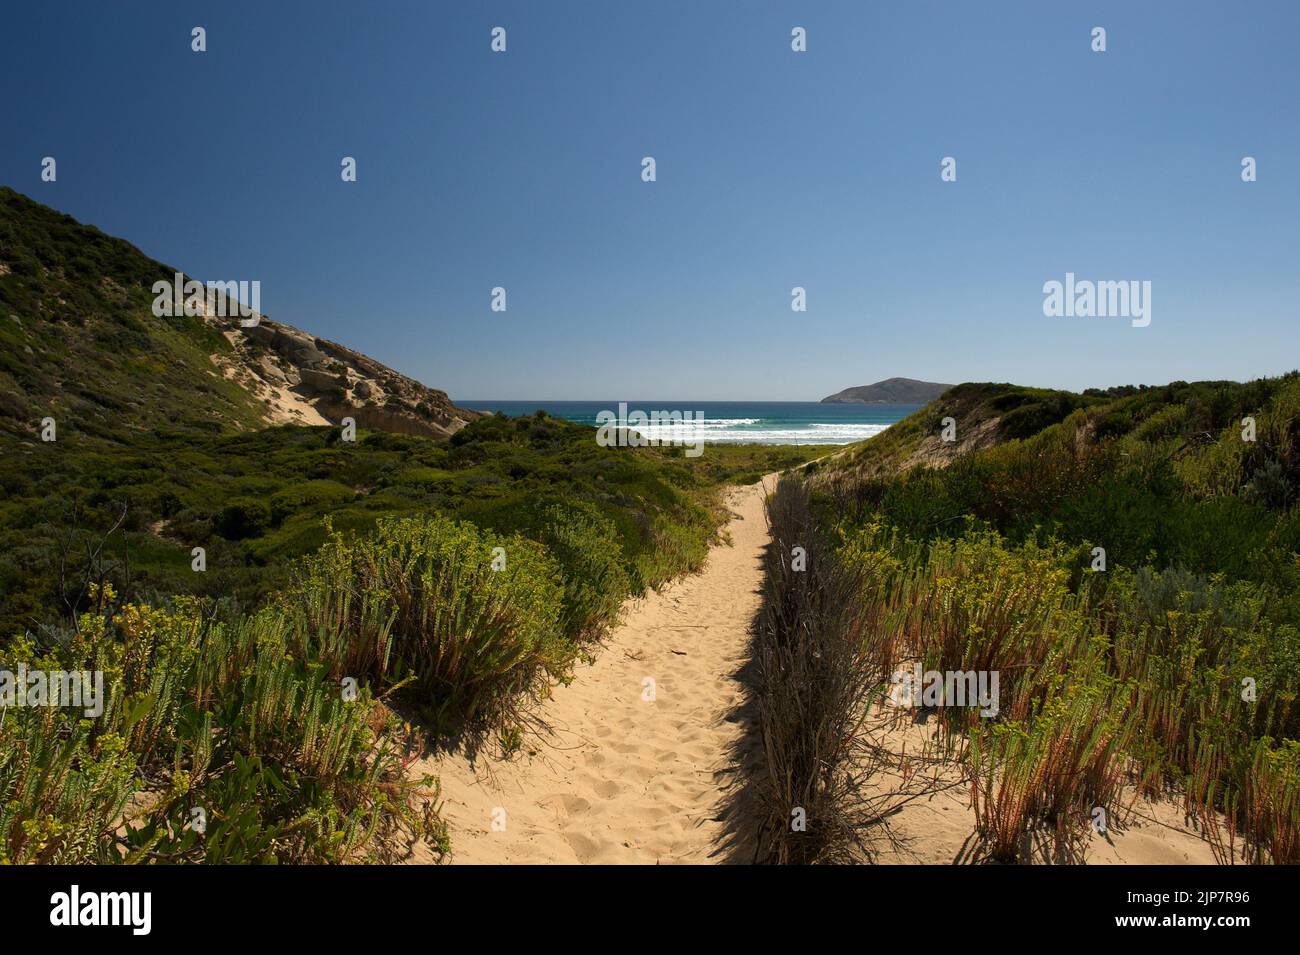 Este es el camino a la playa Tongue Point, arena muy suave, que fue un trabajo duro. ¡Vale la pena cuando te dan una bonita playa para ti! Foto de stock